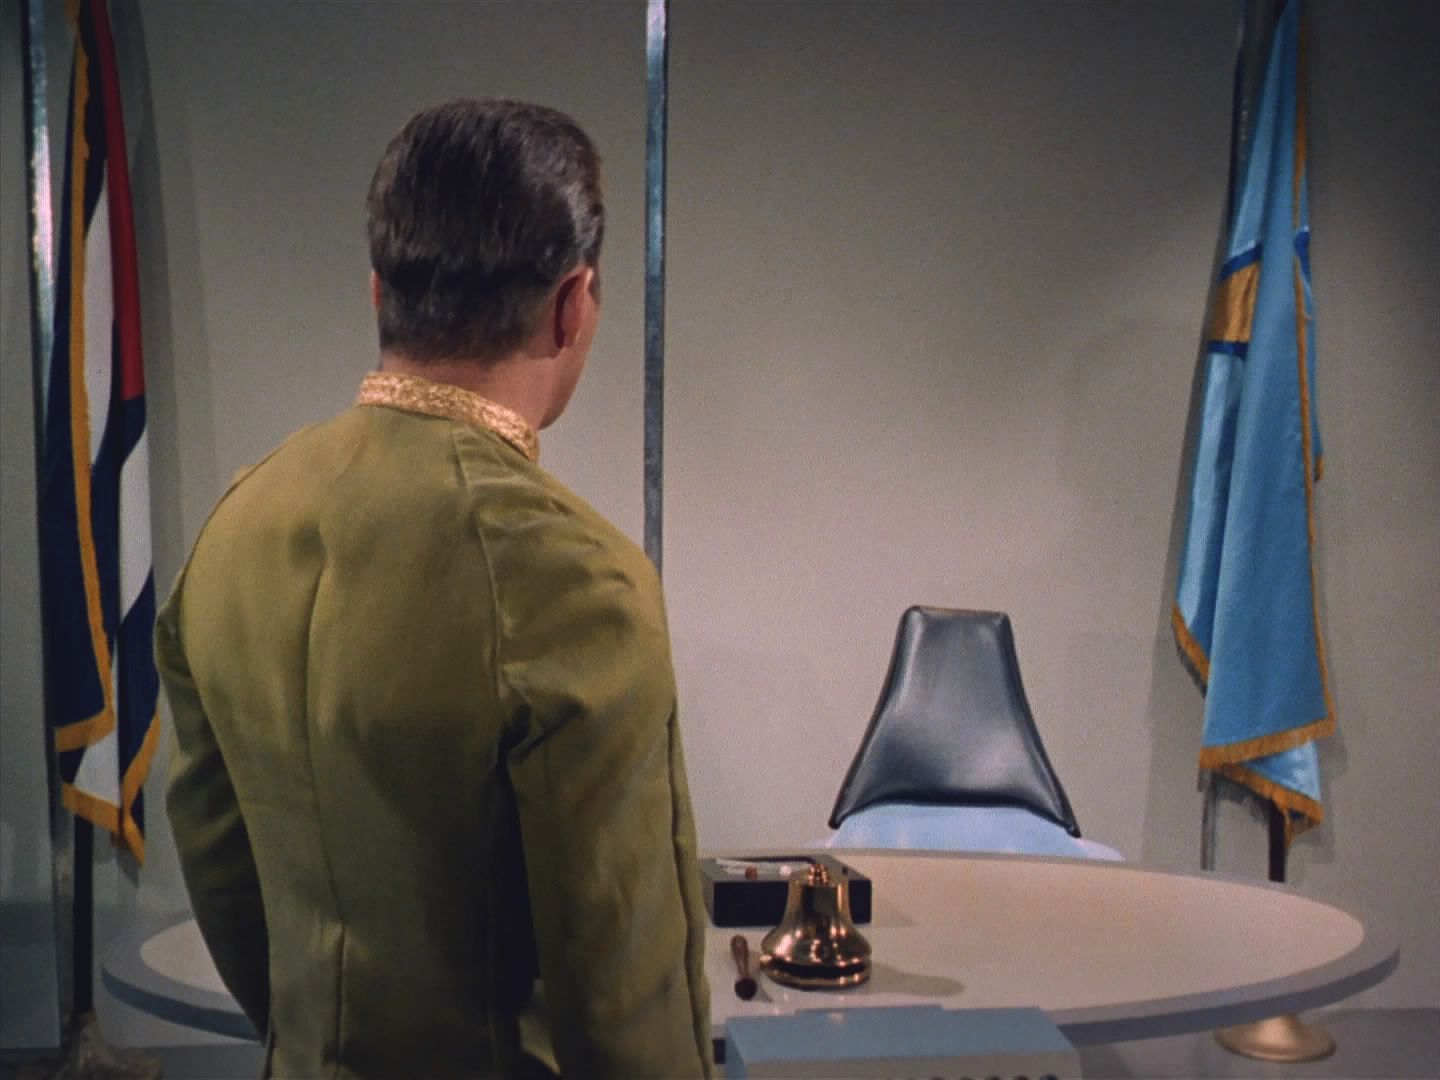 Ač byl Spock už uznán vinen, obrací se Kirk na komodora, jestli by rozsudek neměli přehodnotit. Mendez mu ale zmizel před očima a Talosan sděluje, že s nimi nikdy nebyl.